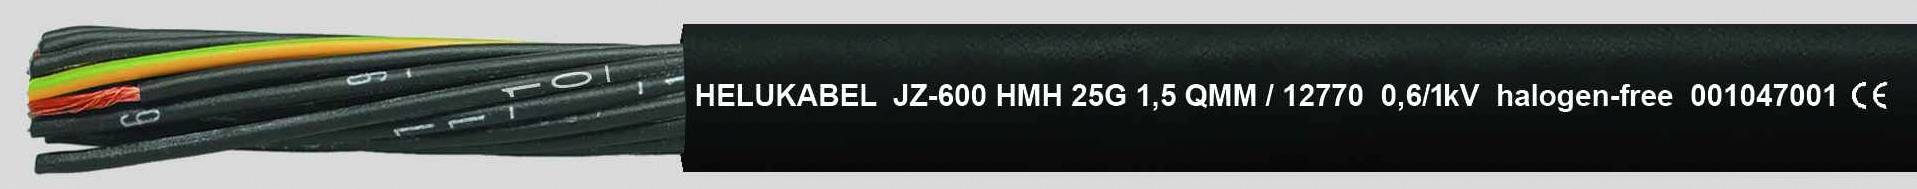 HELUKABEL JZ-600 HMH Steuerleitung 4 G 2.50 mm² Schwarz 12774-500 500 m